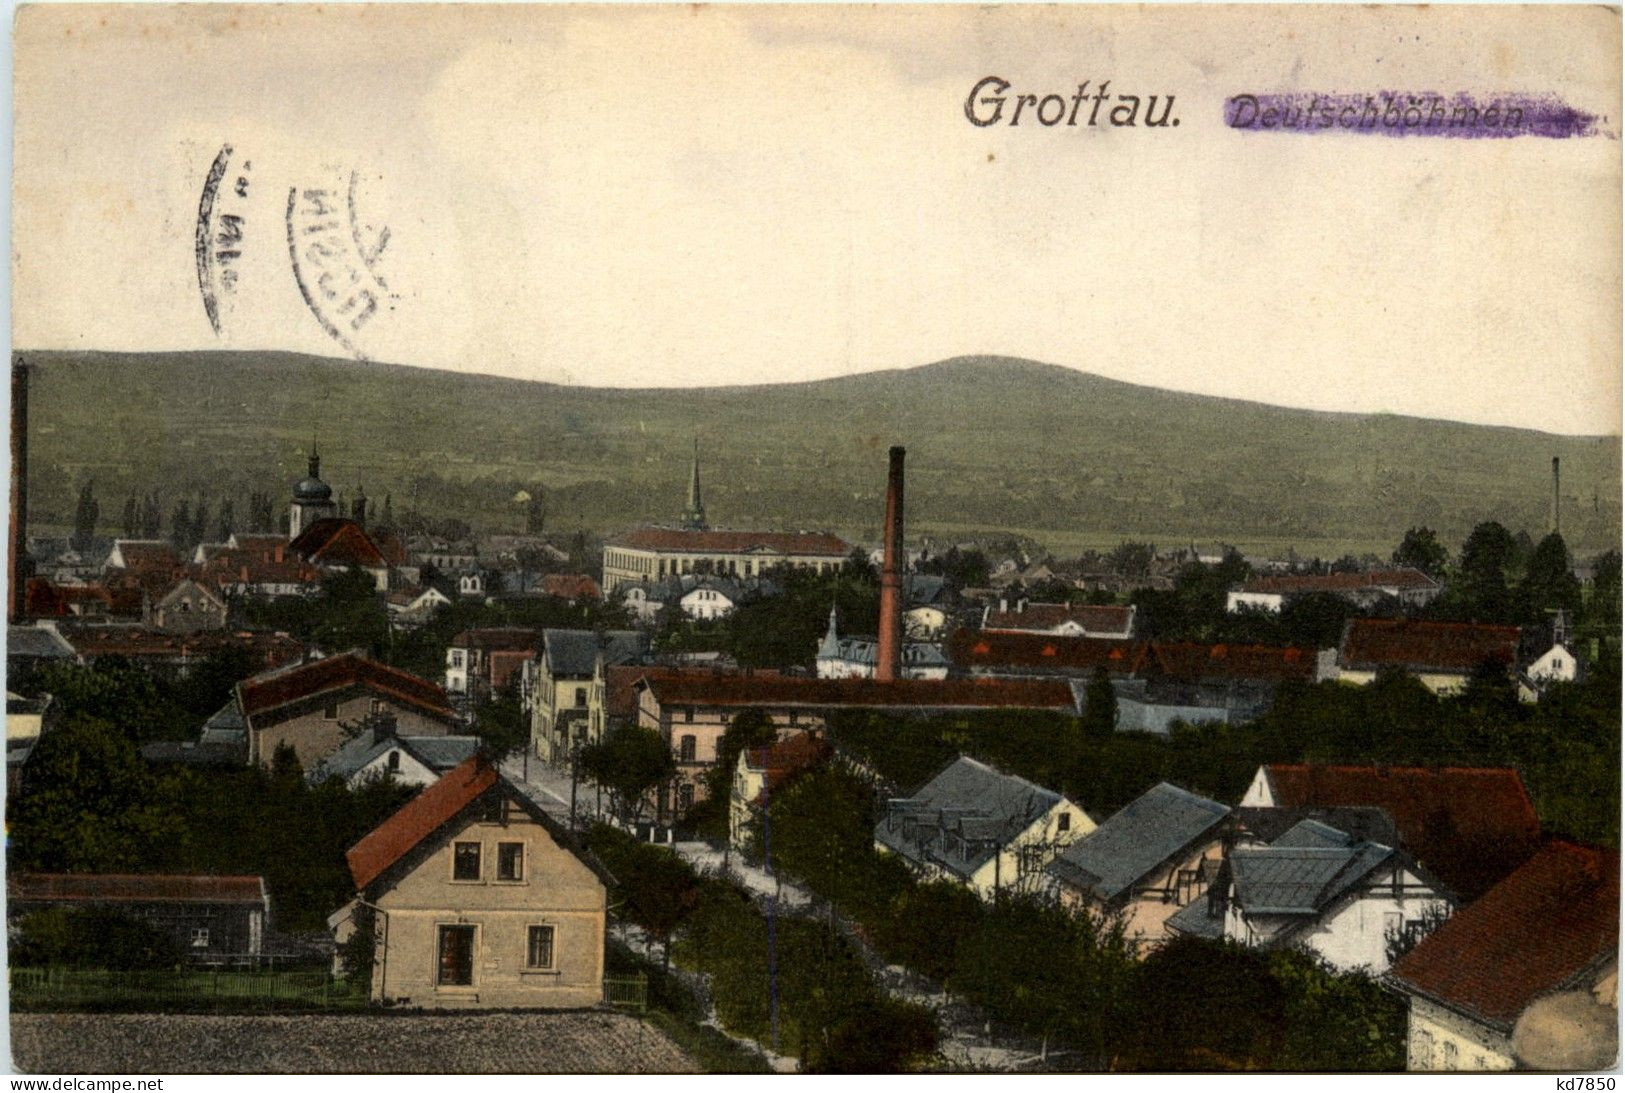 Grottau - Deutschböhmen - Tchéquie